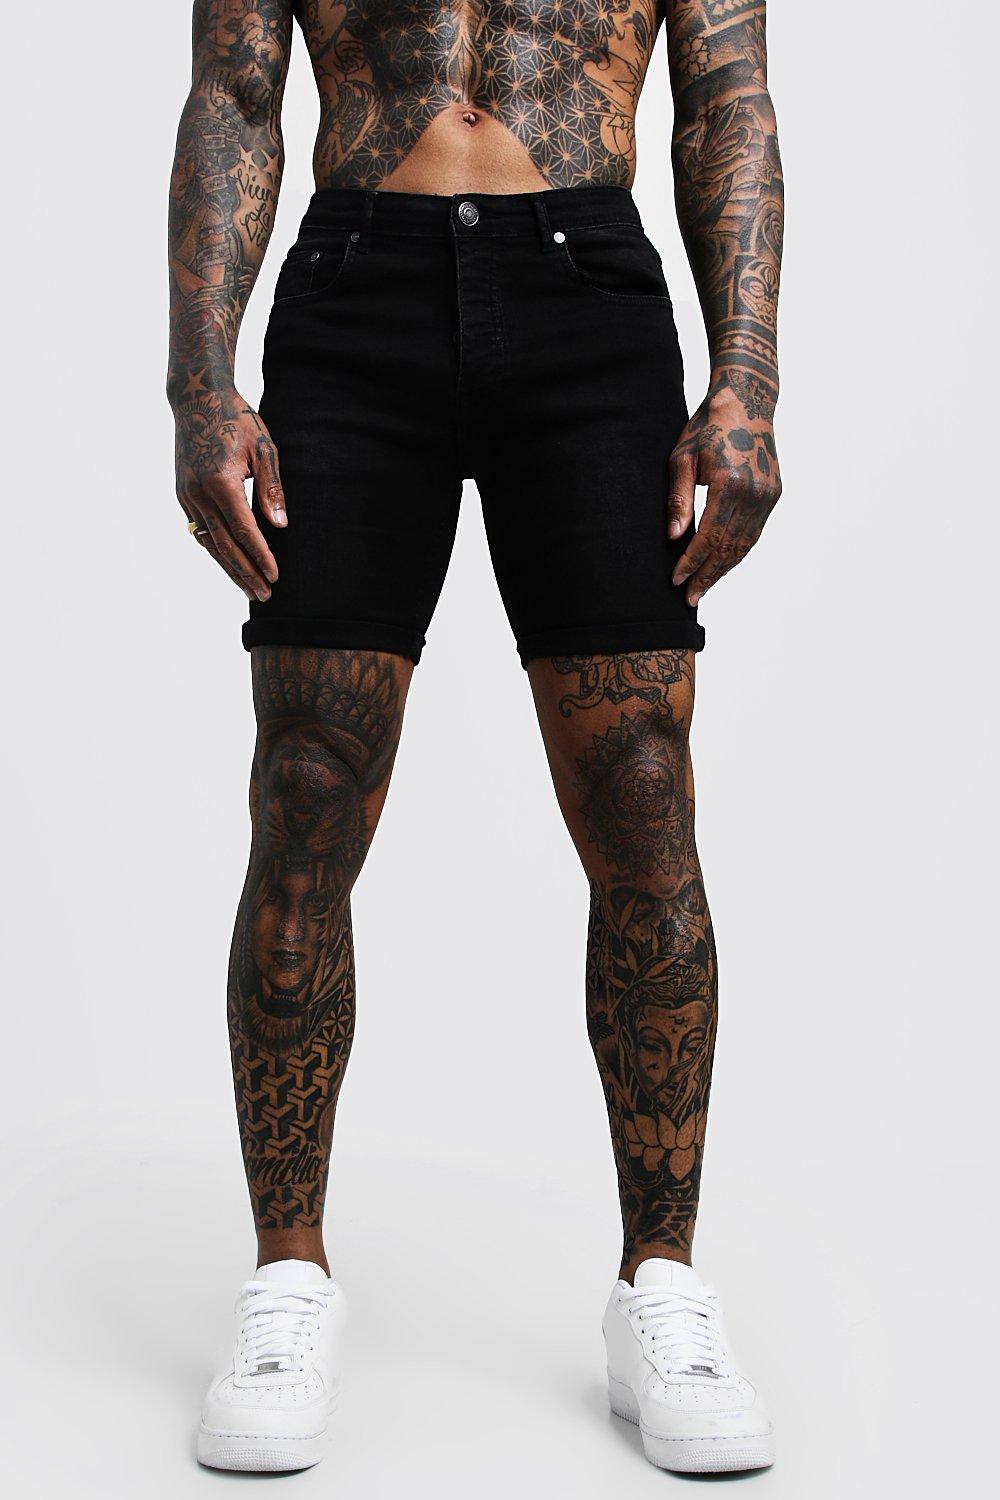 black skinny jean shorts